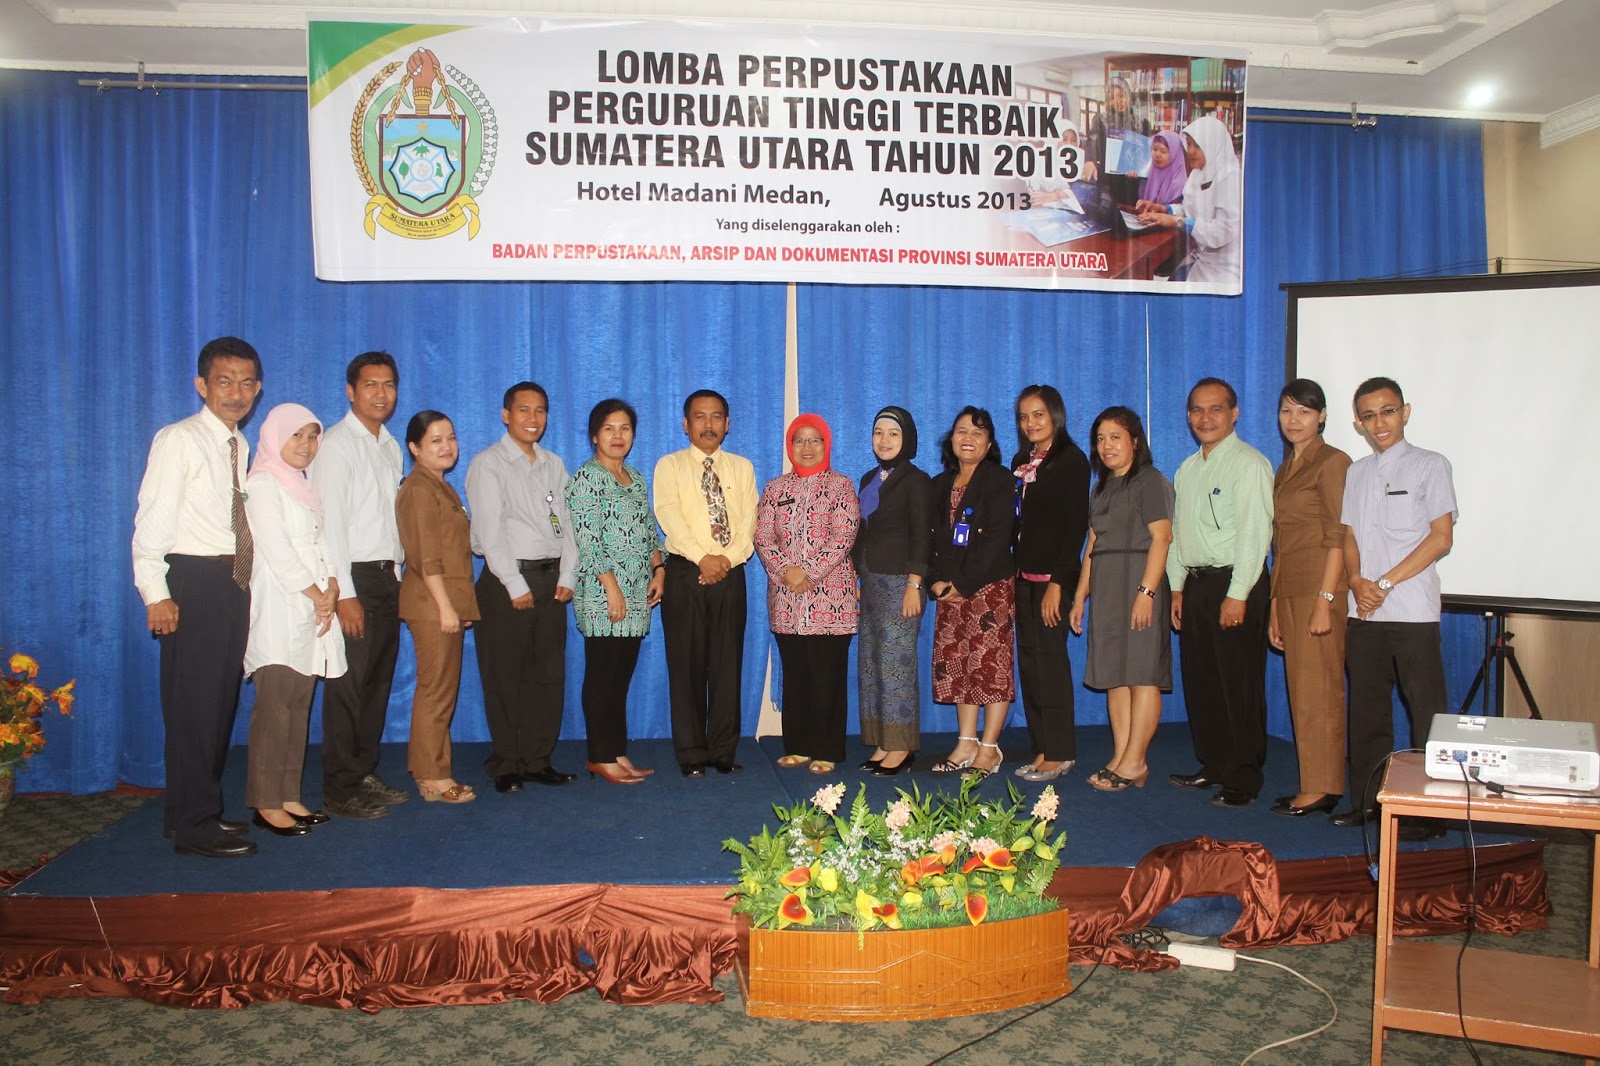  Persentasi Perpustakaan Terbaik Sumatera Utara Tahun 2013 